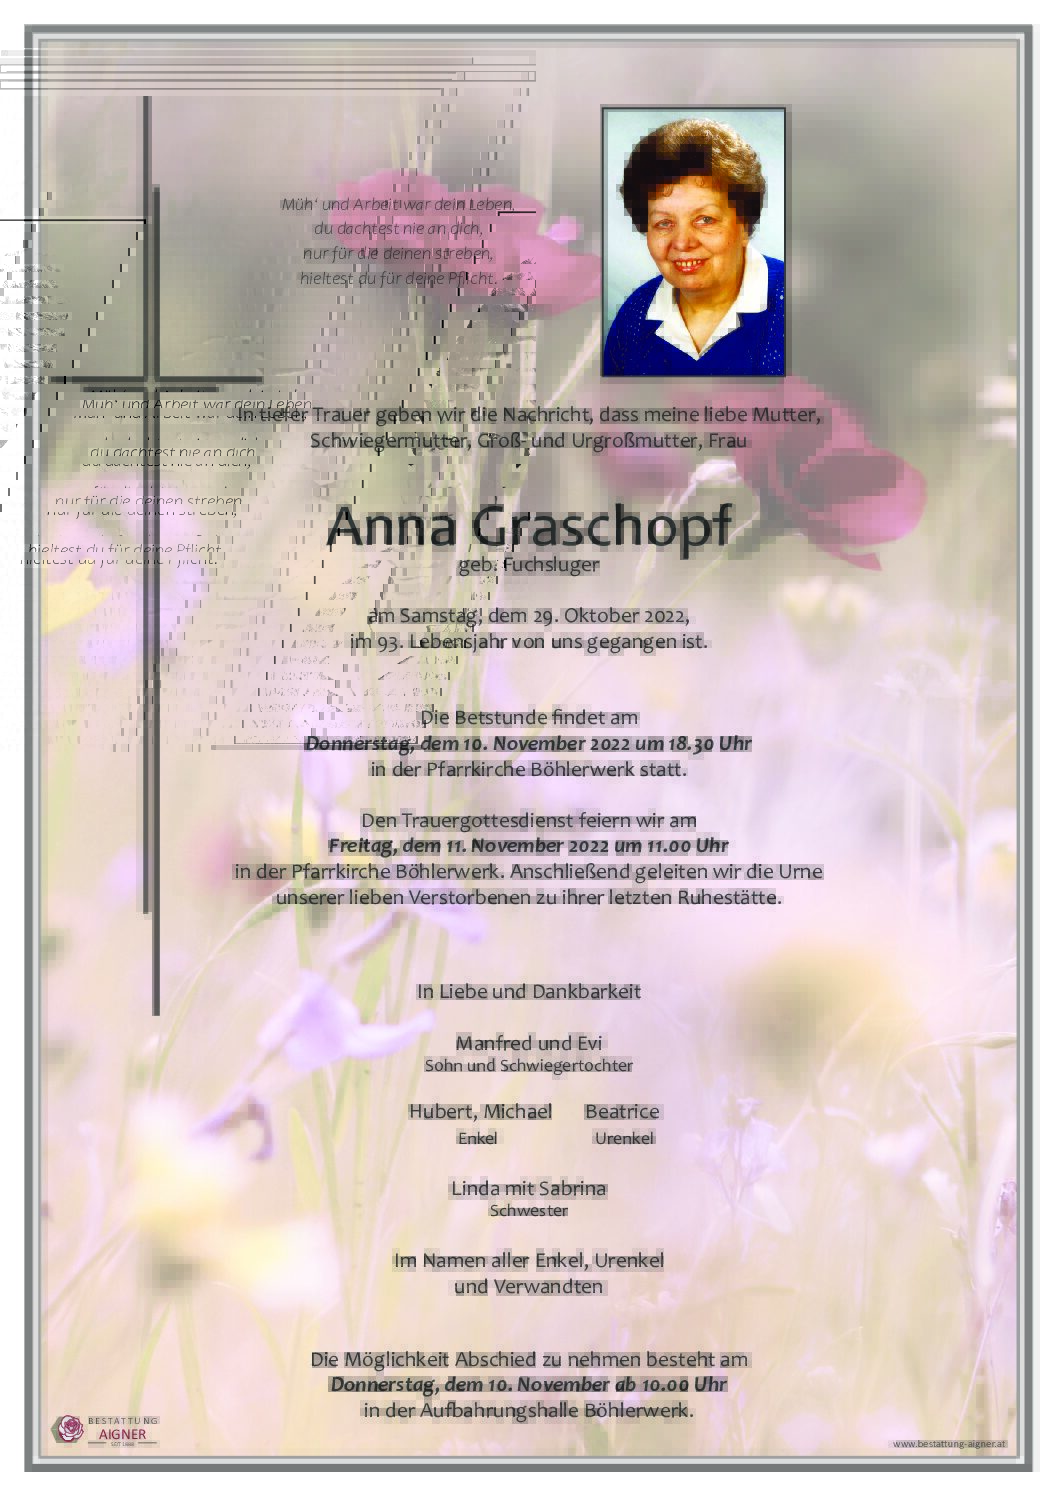 Anna Graschopf